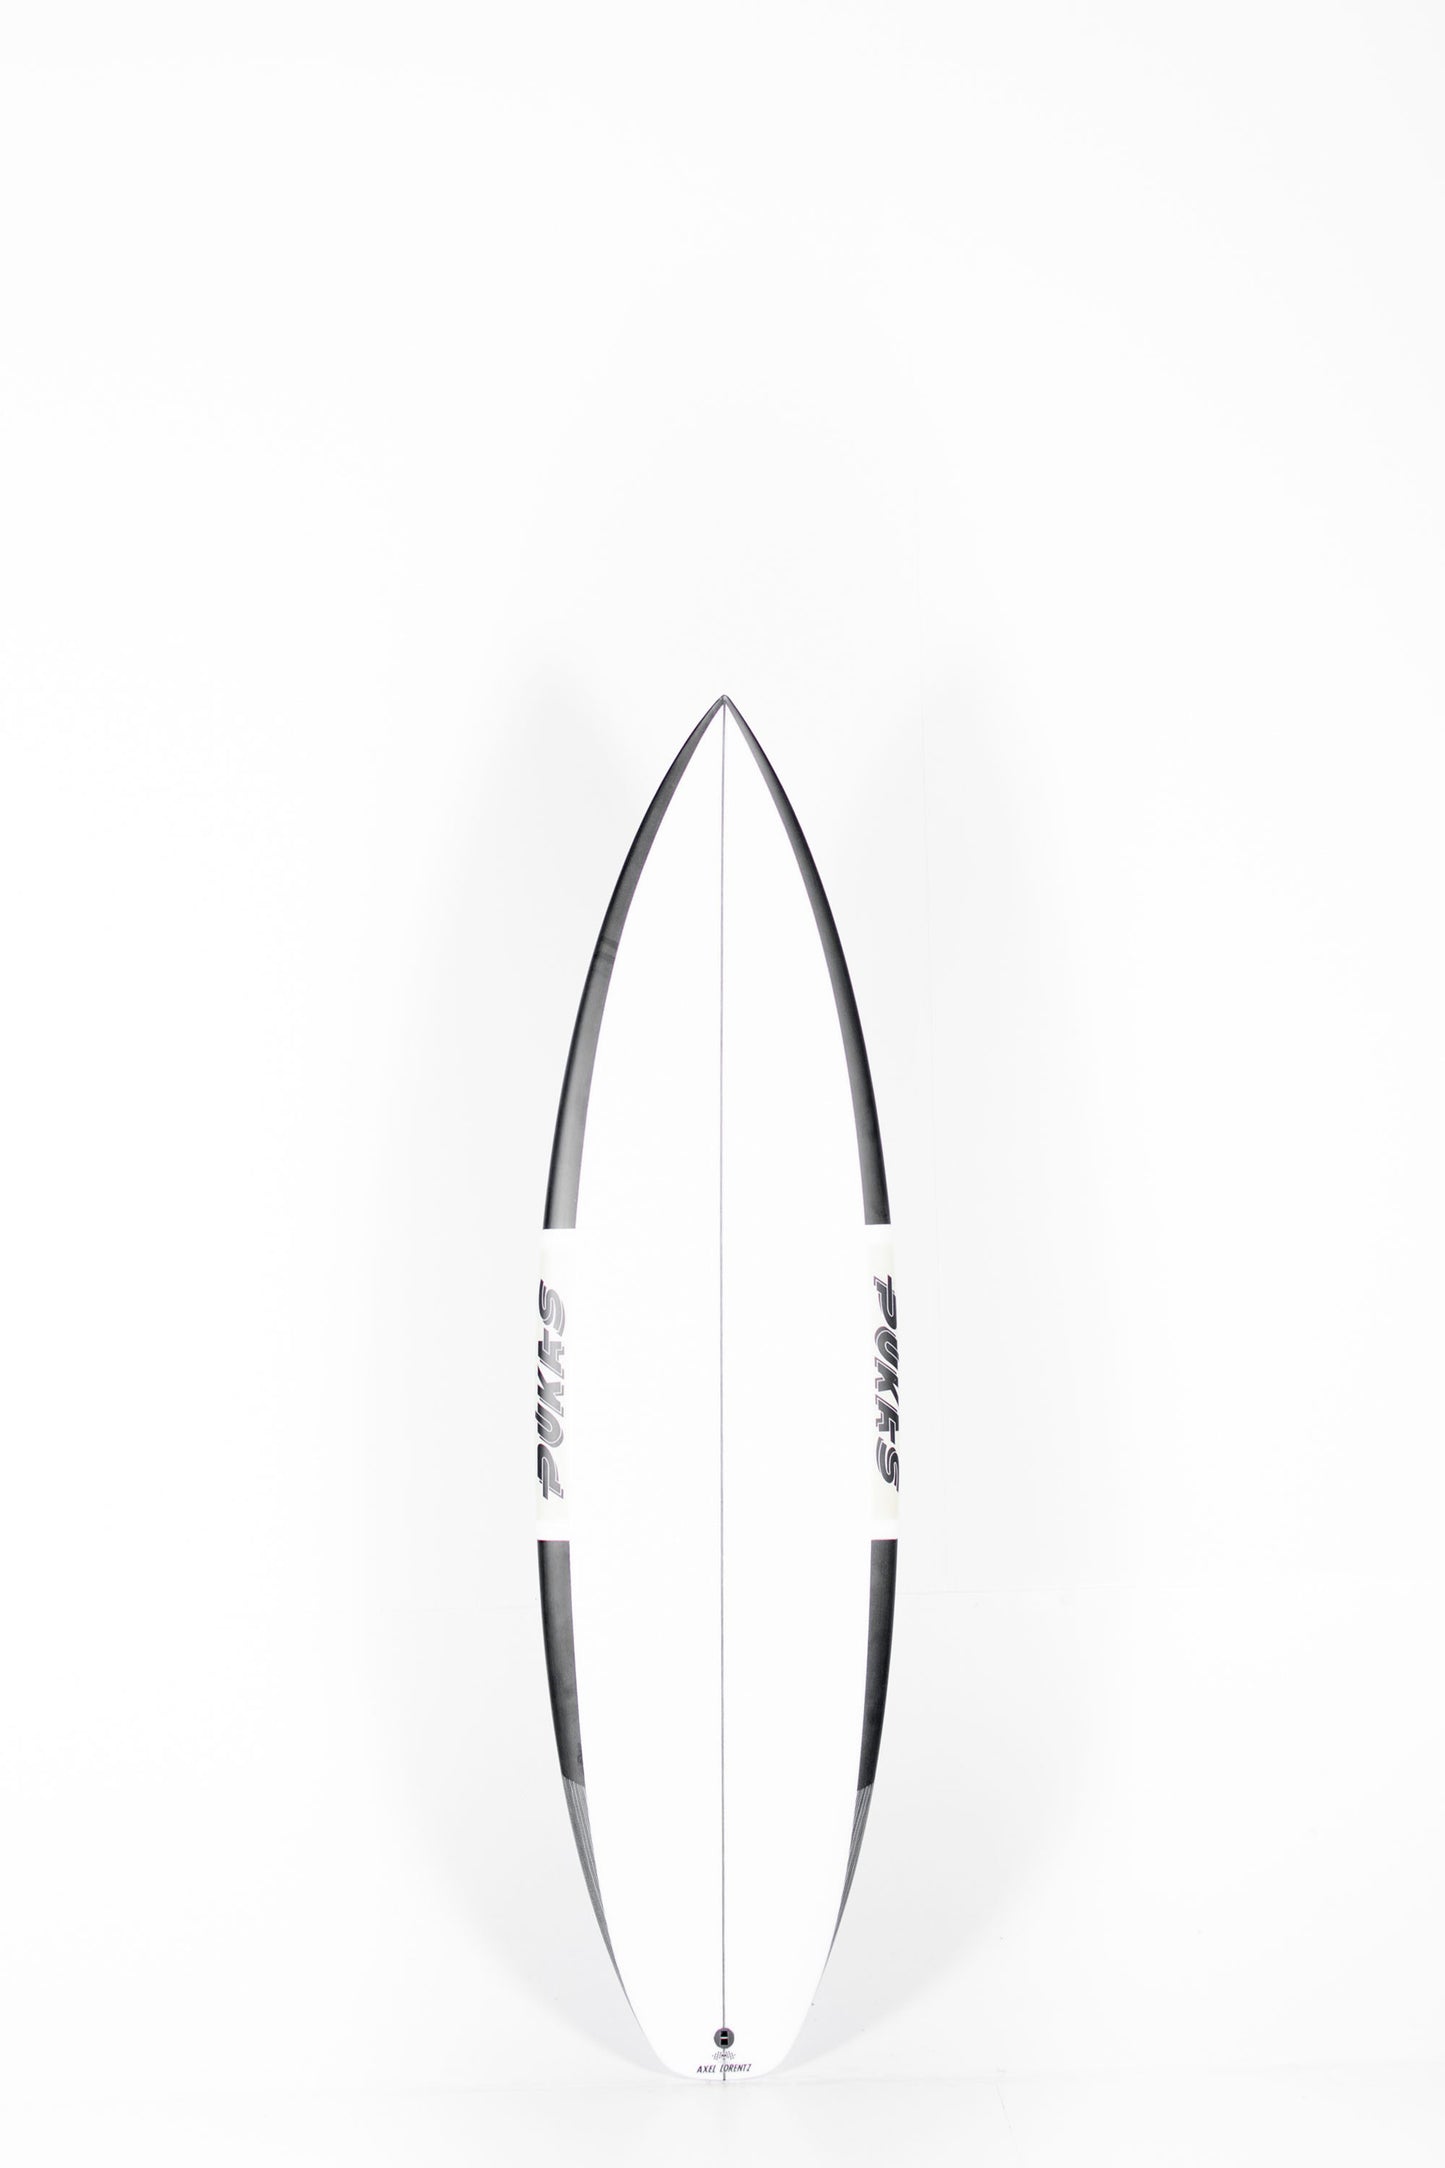 Pukas Surf Shop - Pukas Surf Shop - Pukas Surfboard - DARKER by Axel Lorentz - 6'1" x 19,63 x 2,4 x 30,67L. - AX06227